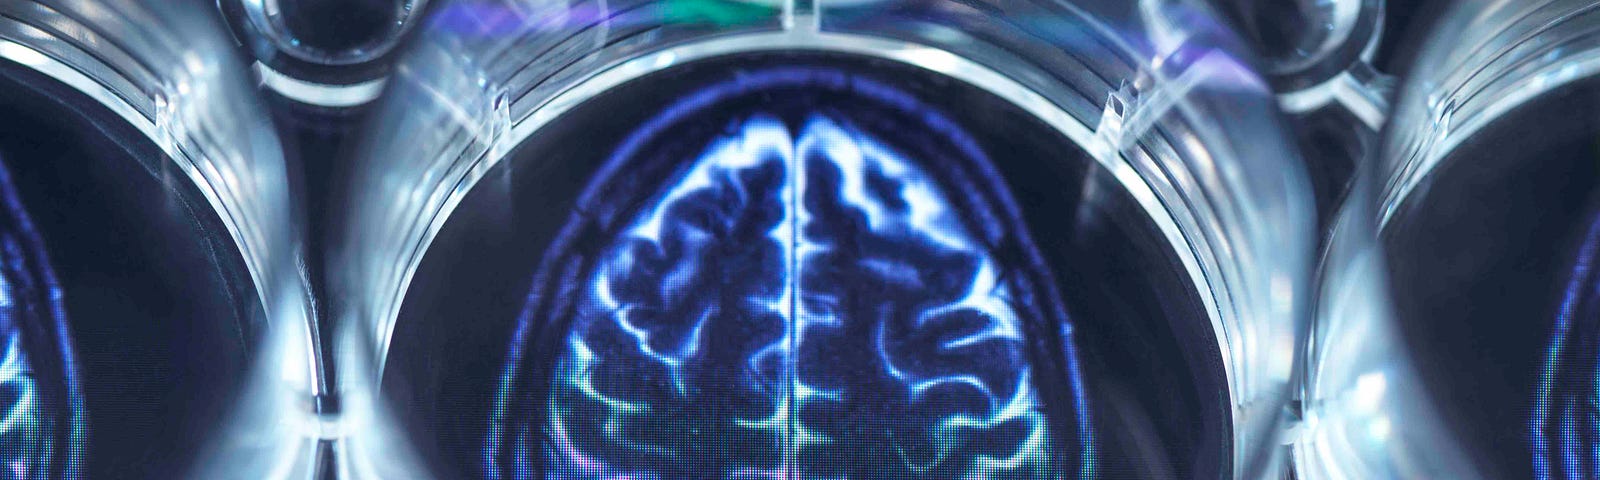 An image of a brain scan viewed through a petri dish.